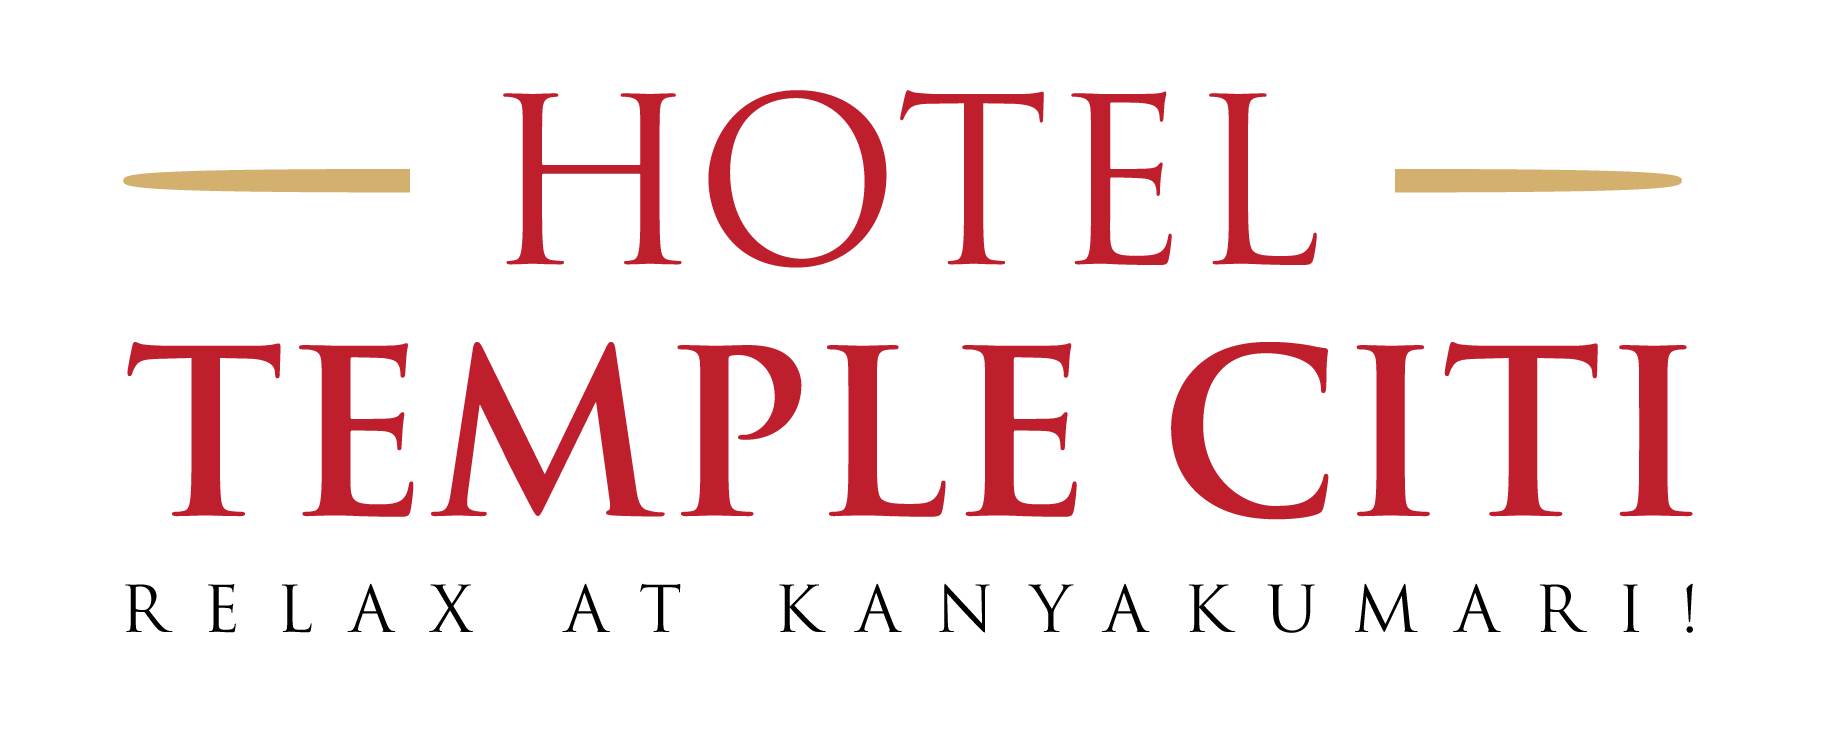 Hotels in Kanyakumari with tariff